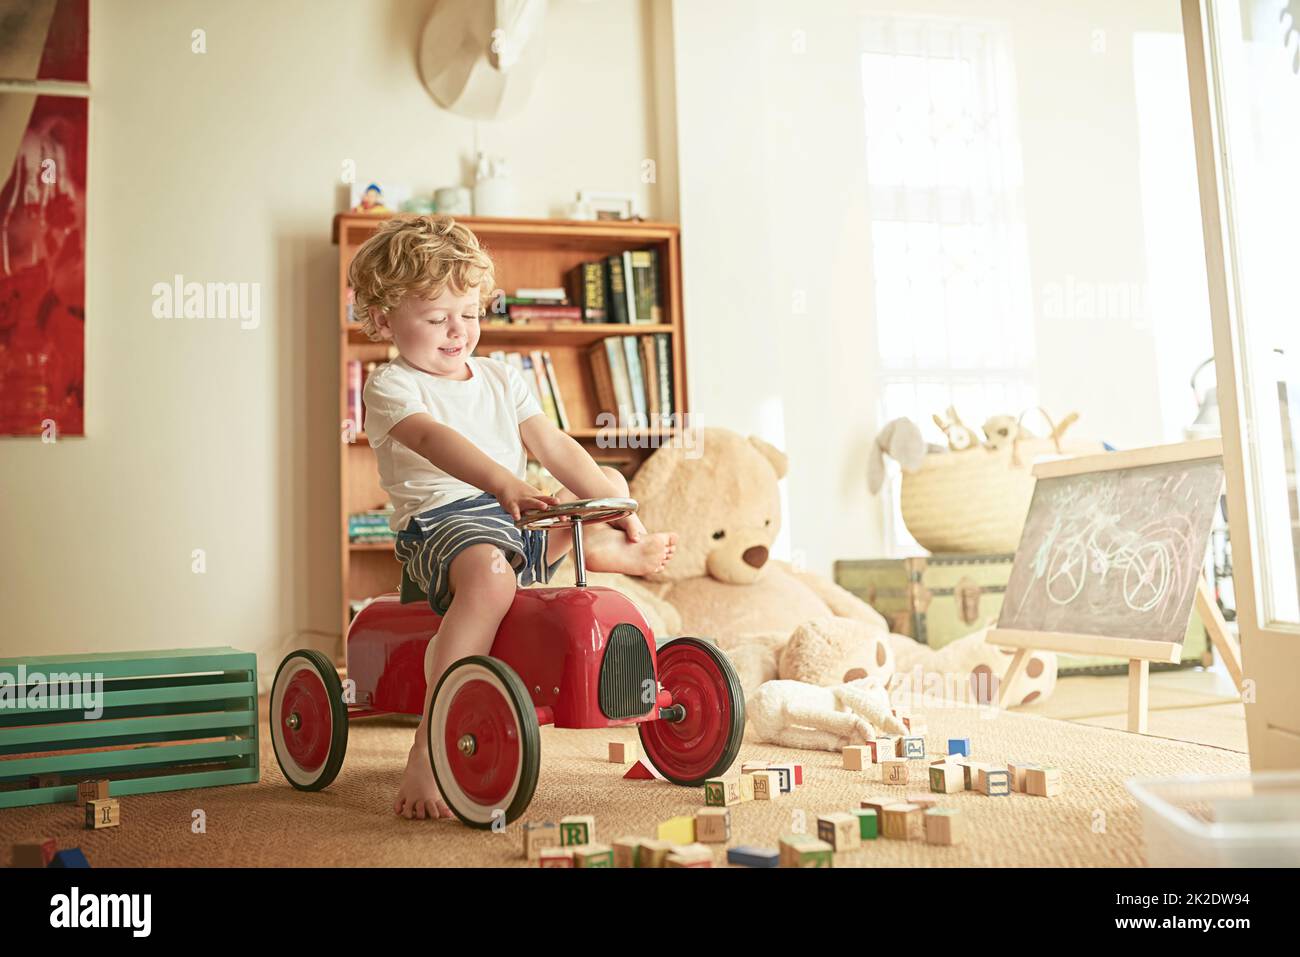 Il gioco fantasioso è essenziale per lo sviluppo di un bambino. Scatto di un ragazzino che gioca su un'auto giocattolo a casa. Foto Stock